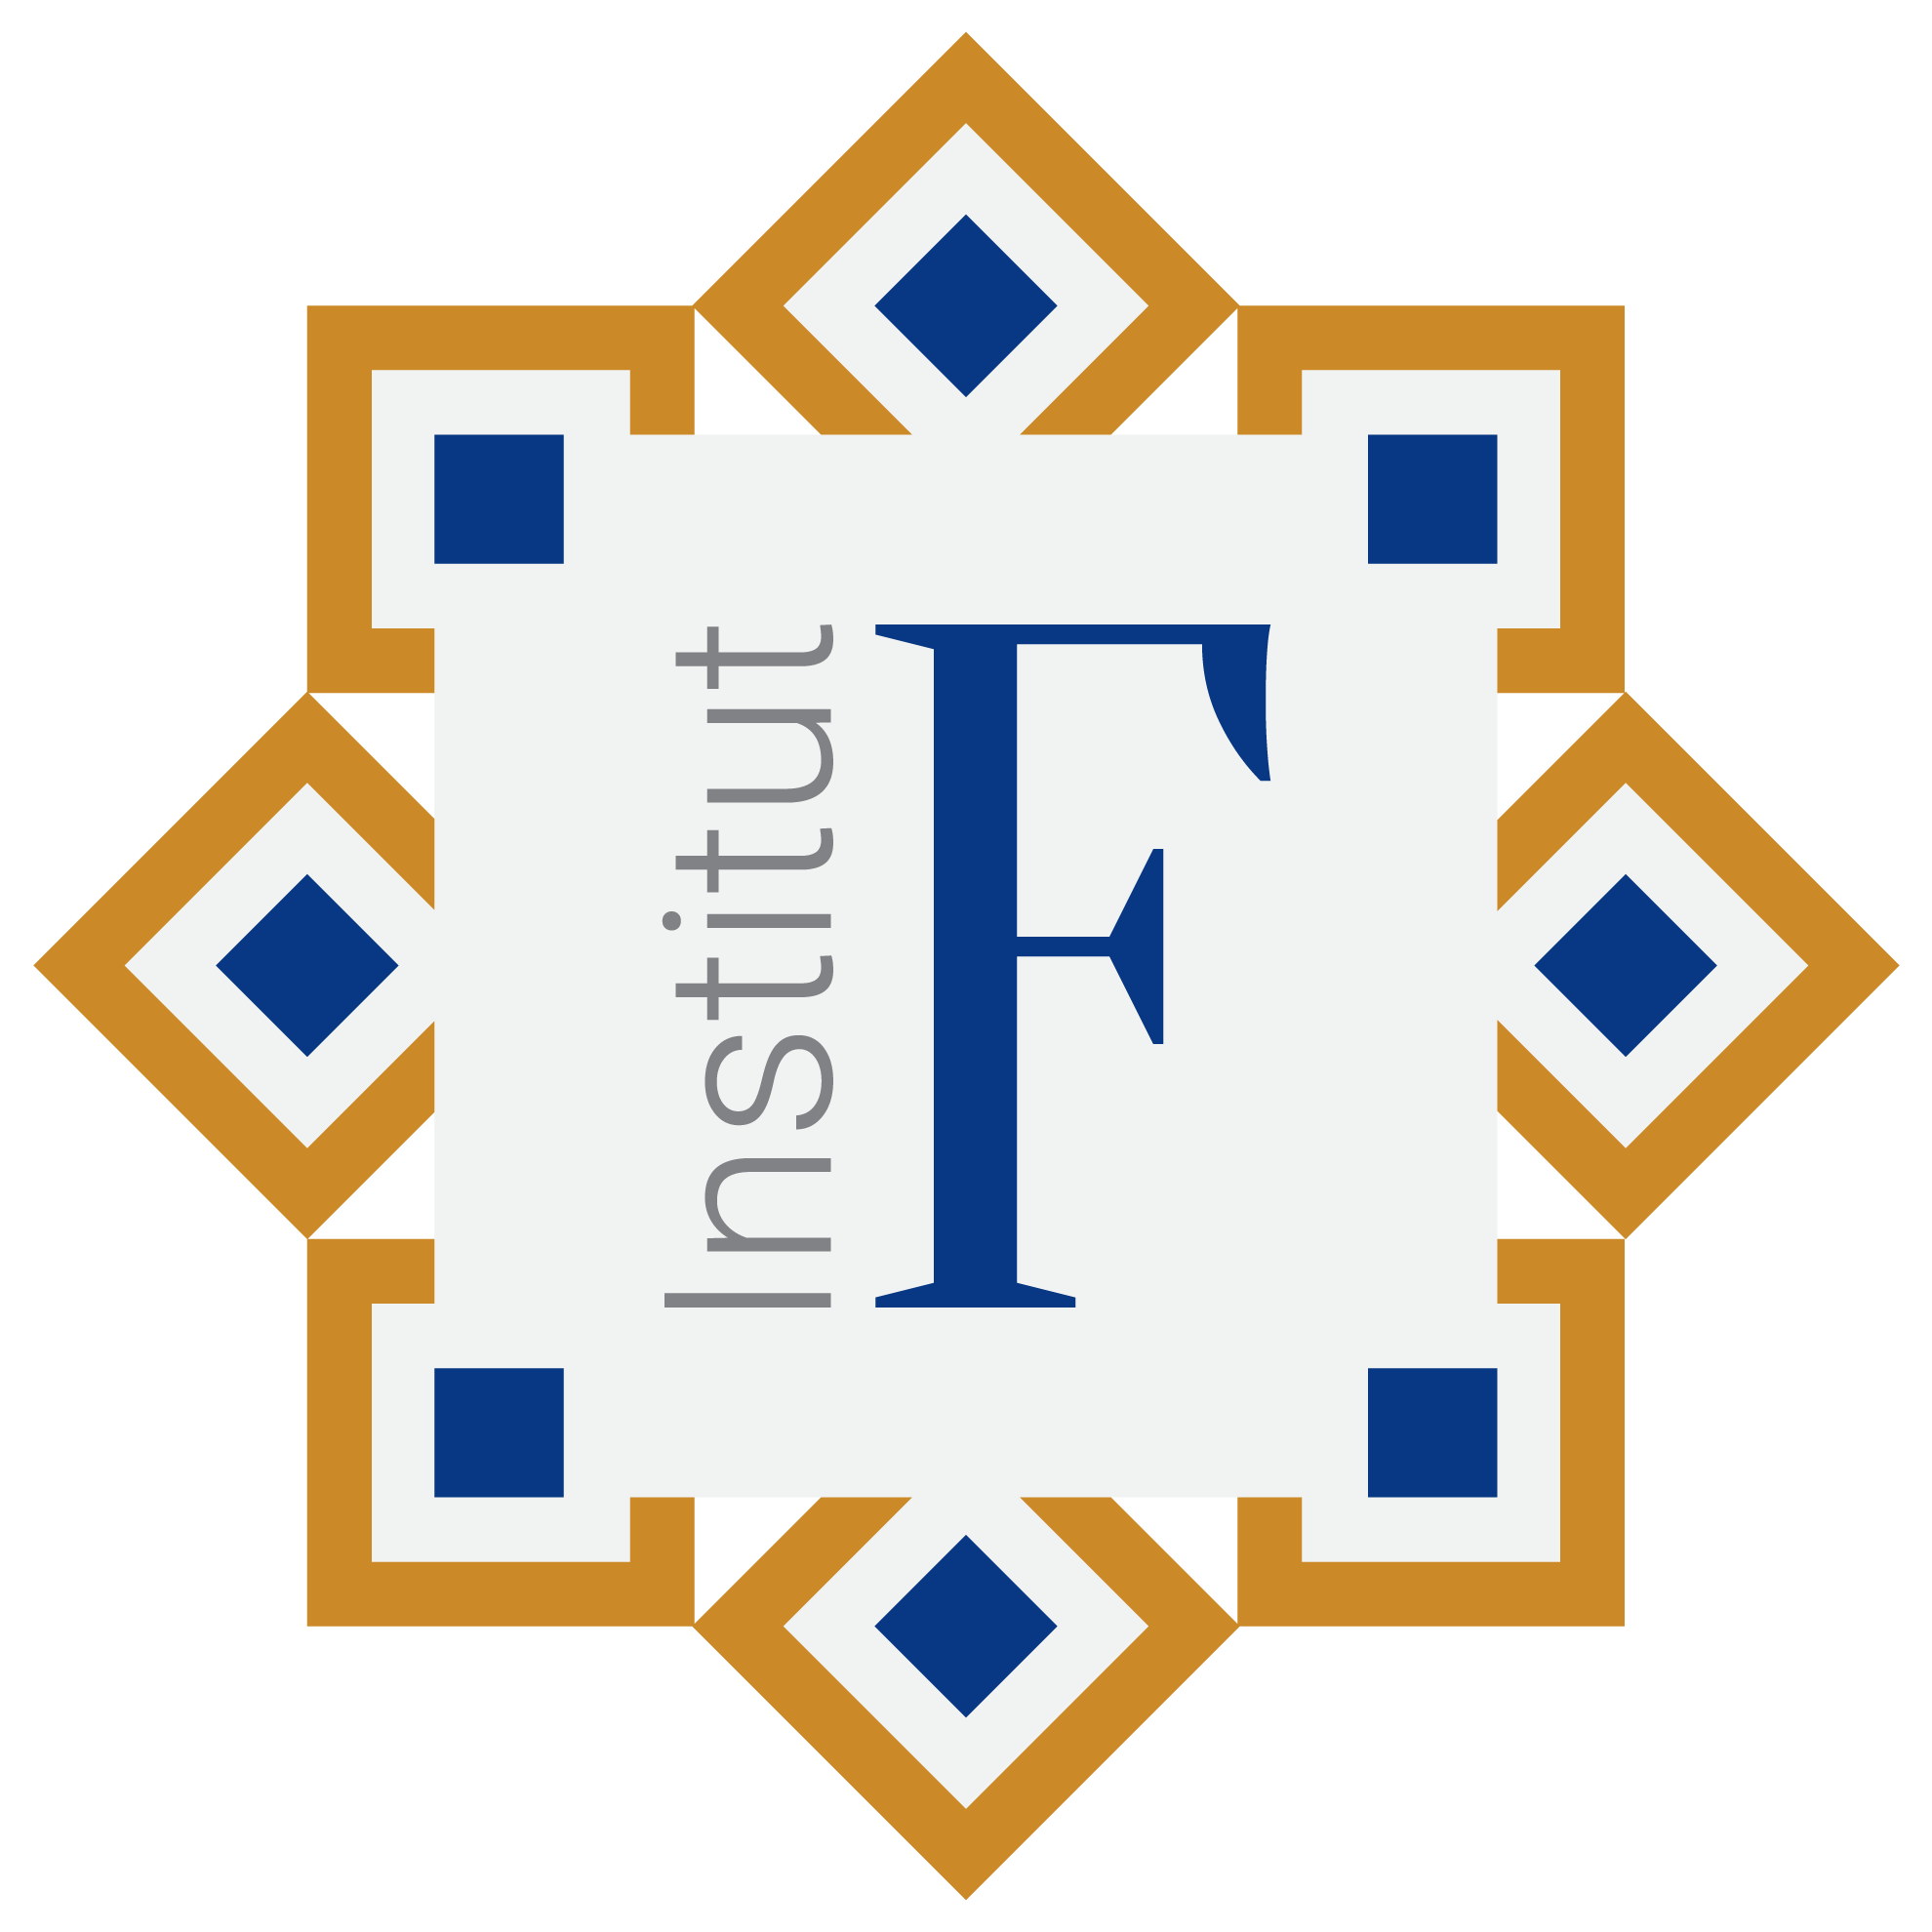 Institut F logo